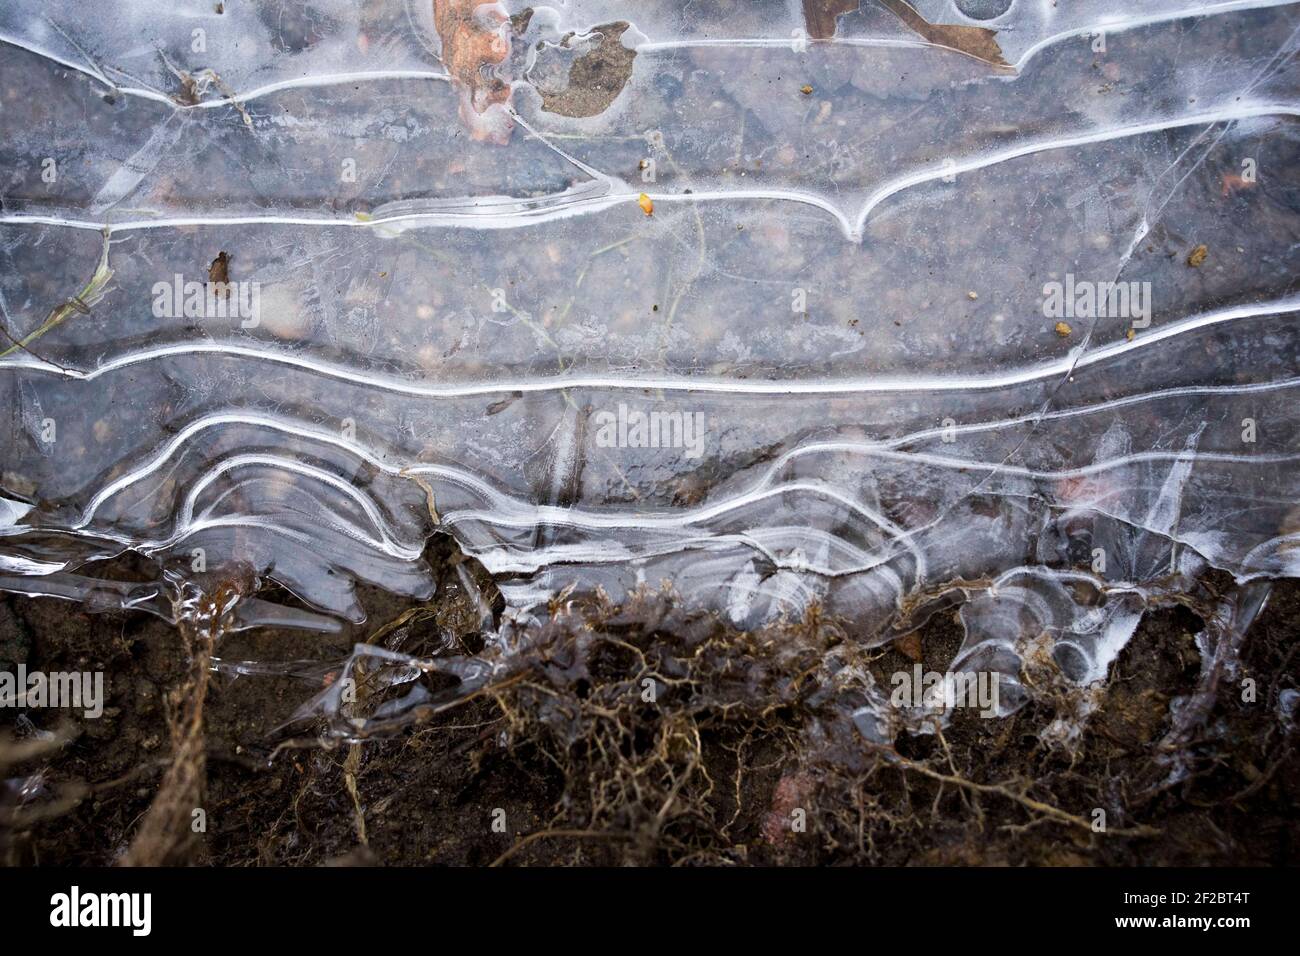 Poznan, Wielkopolska, Polonia. 11 Marzo 2021. Dalla mattina sulla riva orientale del lago Rusalka si potevano osservare le forme di ghiaccio, creando modelli originali. Questa è una delle ultime tracce dell'inverno in partenza a Poznan. Credit: Dawid Tatarkiewicz/ZUMA Wire/Alamy Live News Foto Stock